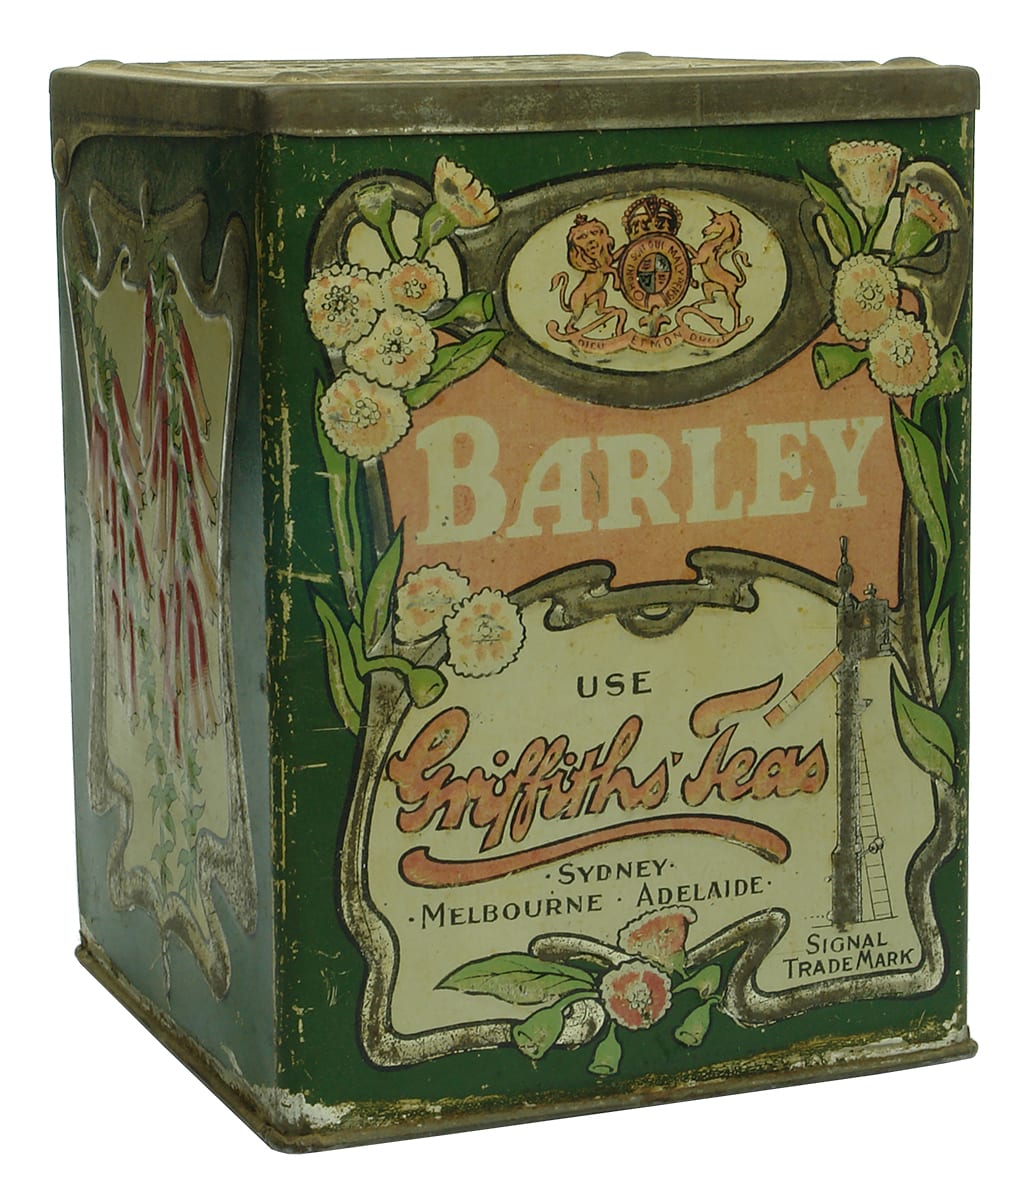 Griffith's Tea Tin Signal barley